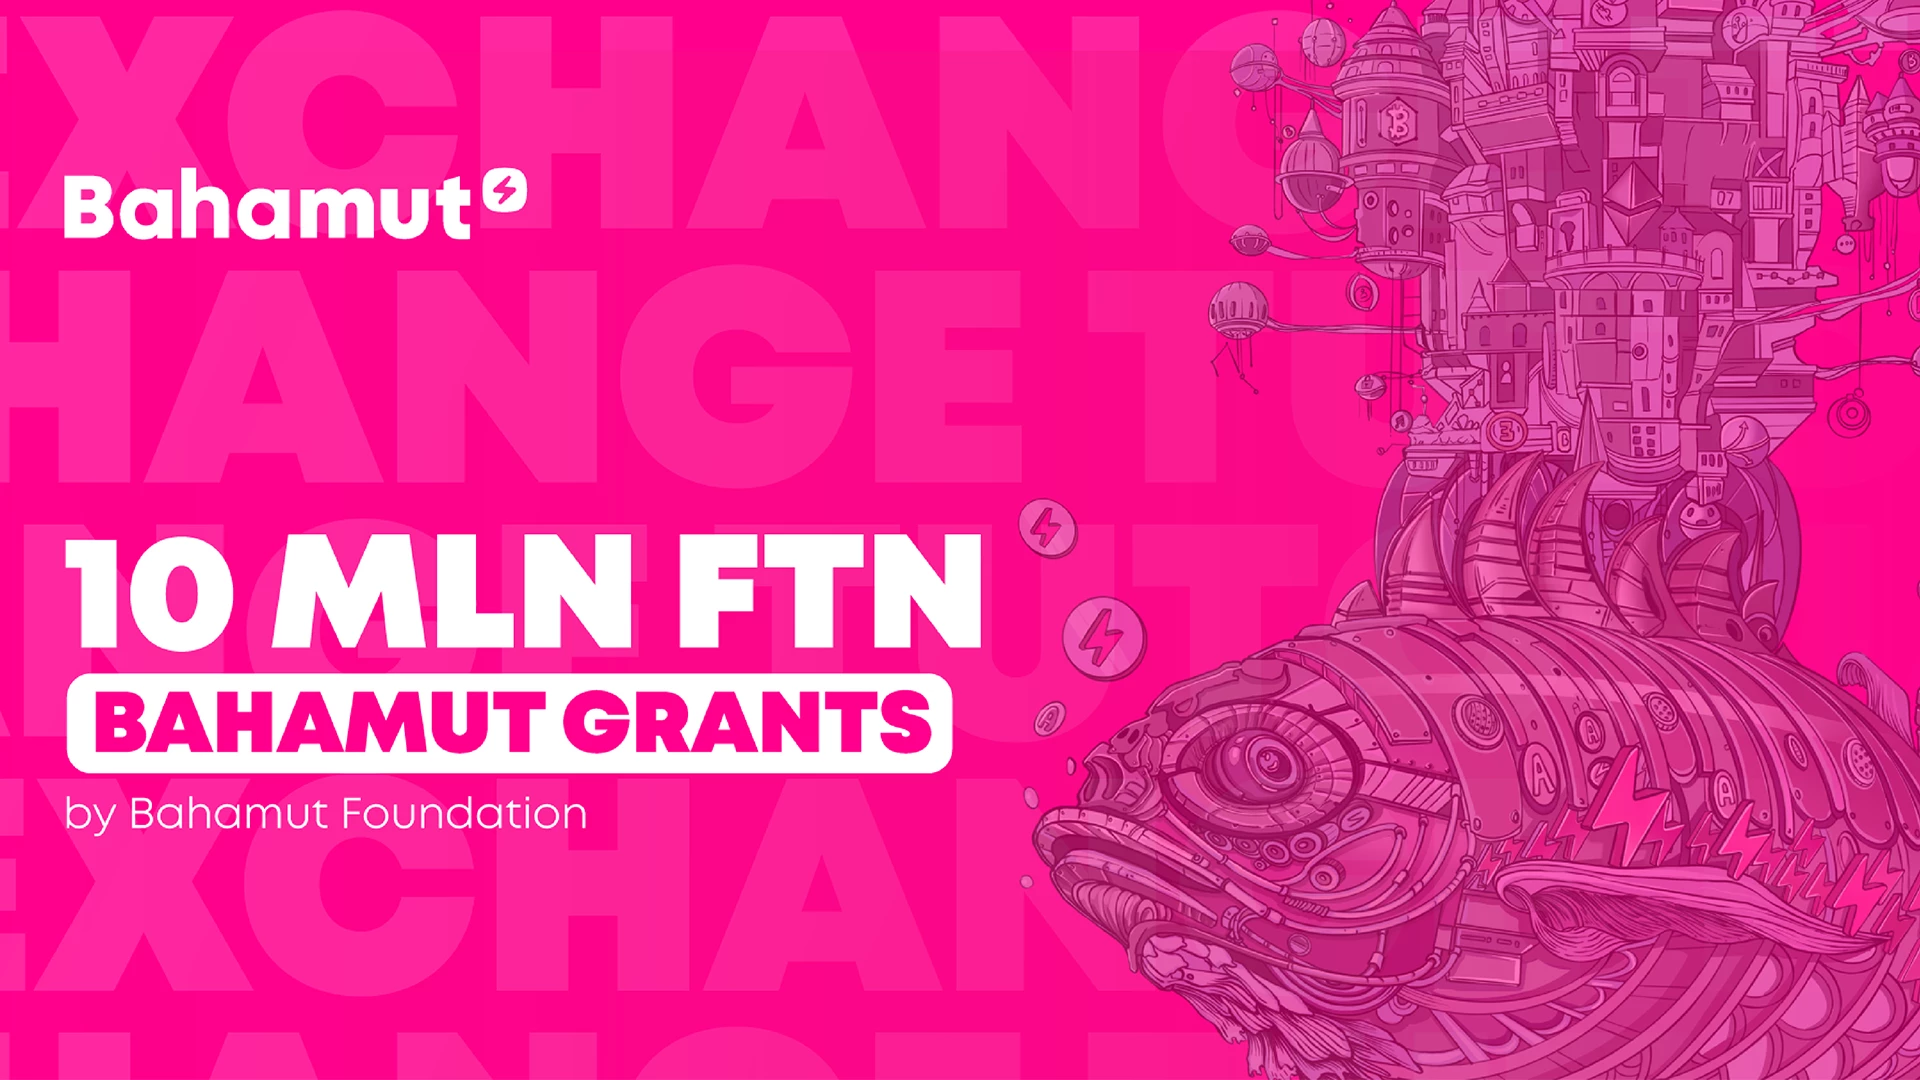 Bahamut Foundation lança o programa Bahamut Grants com um fundo de $10 milhões FTN.